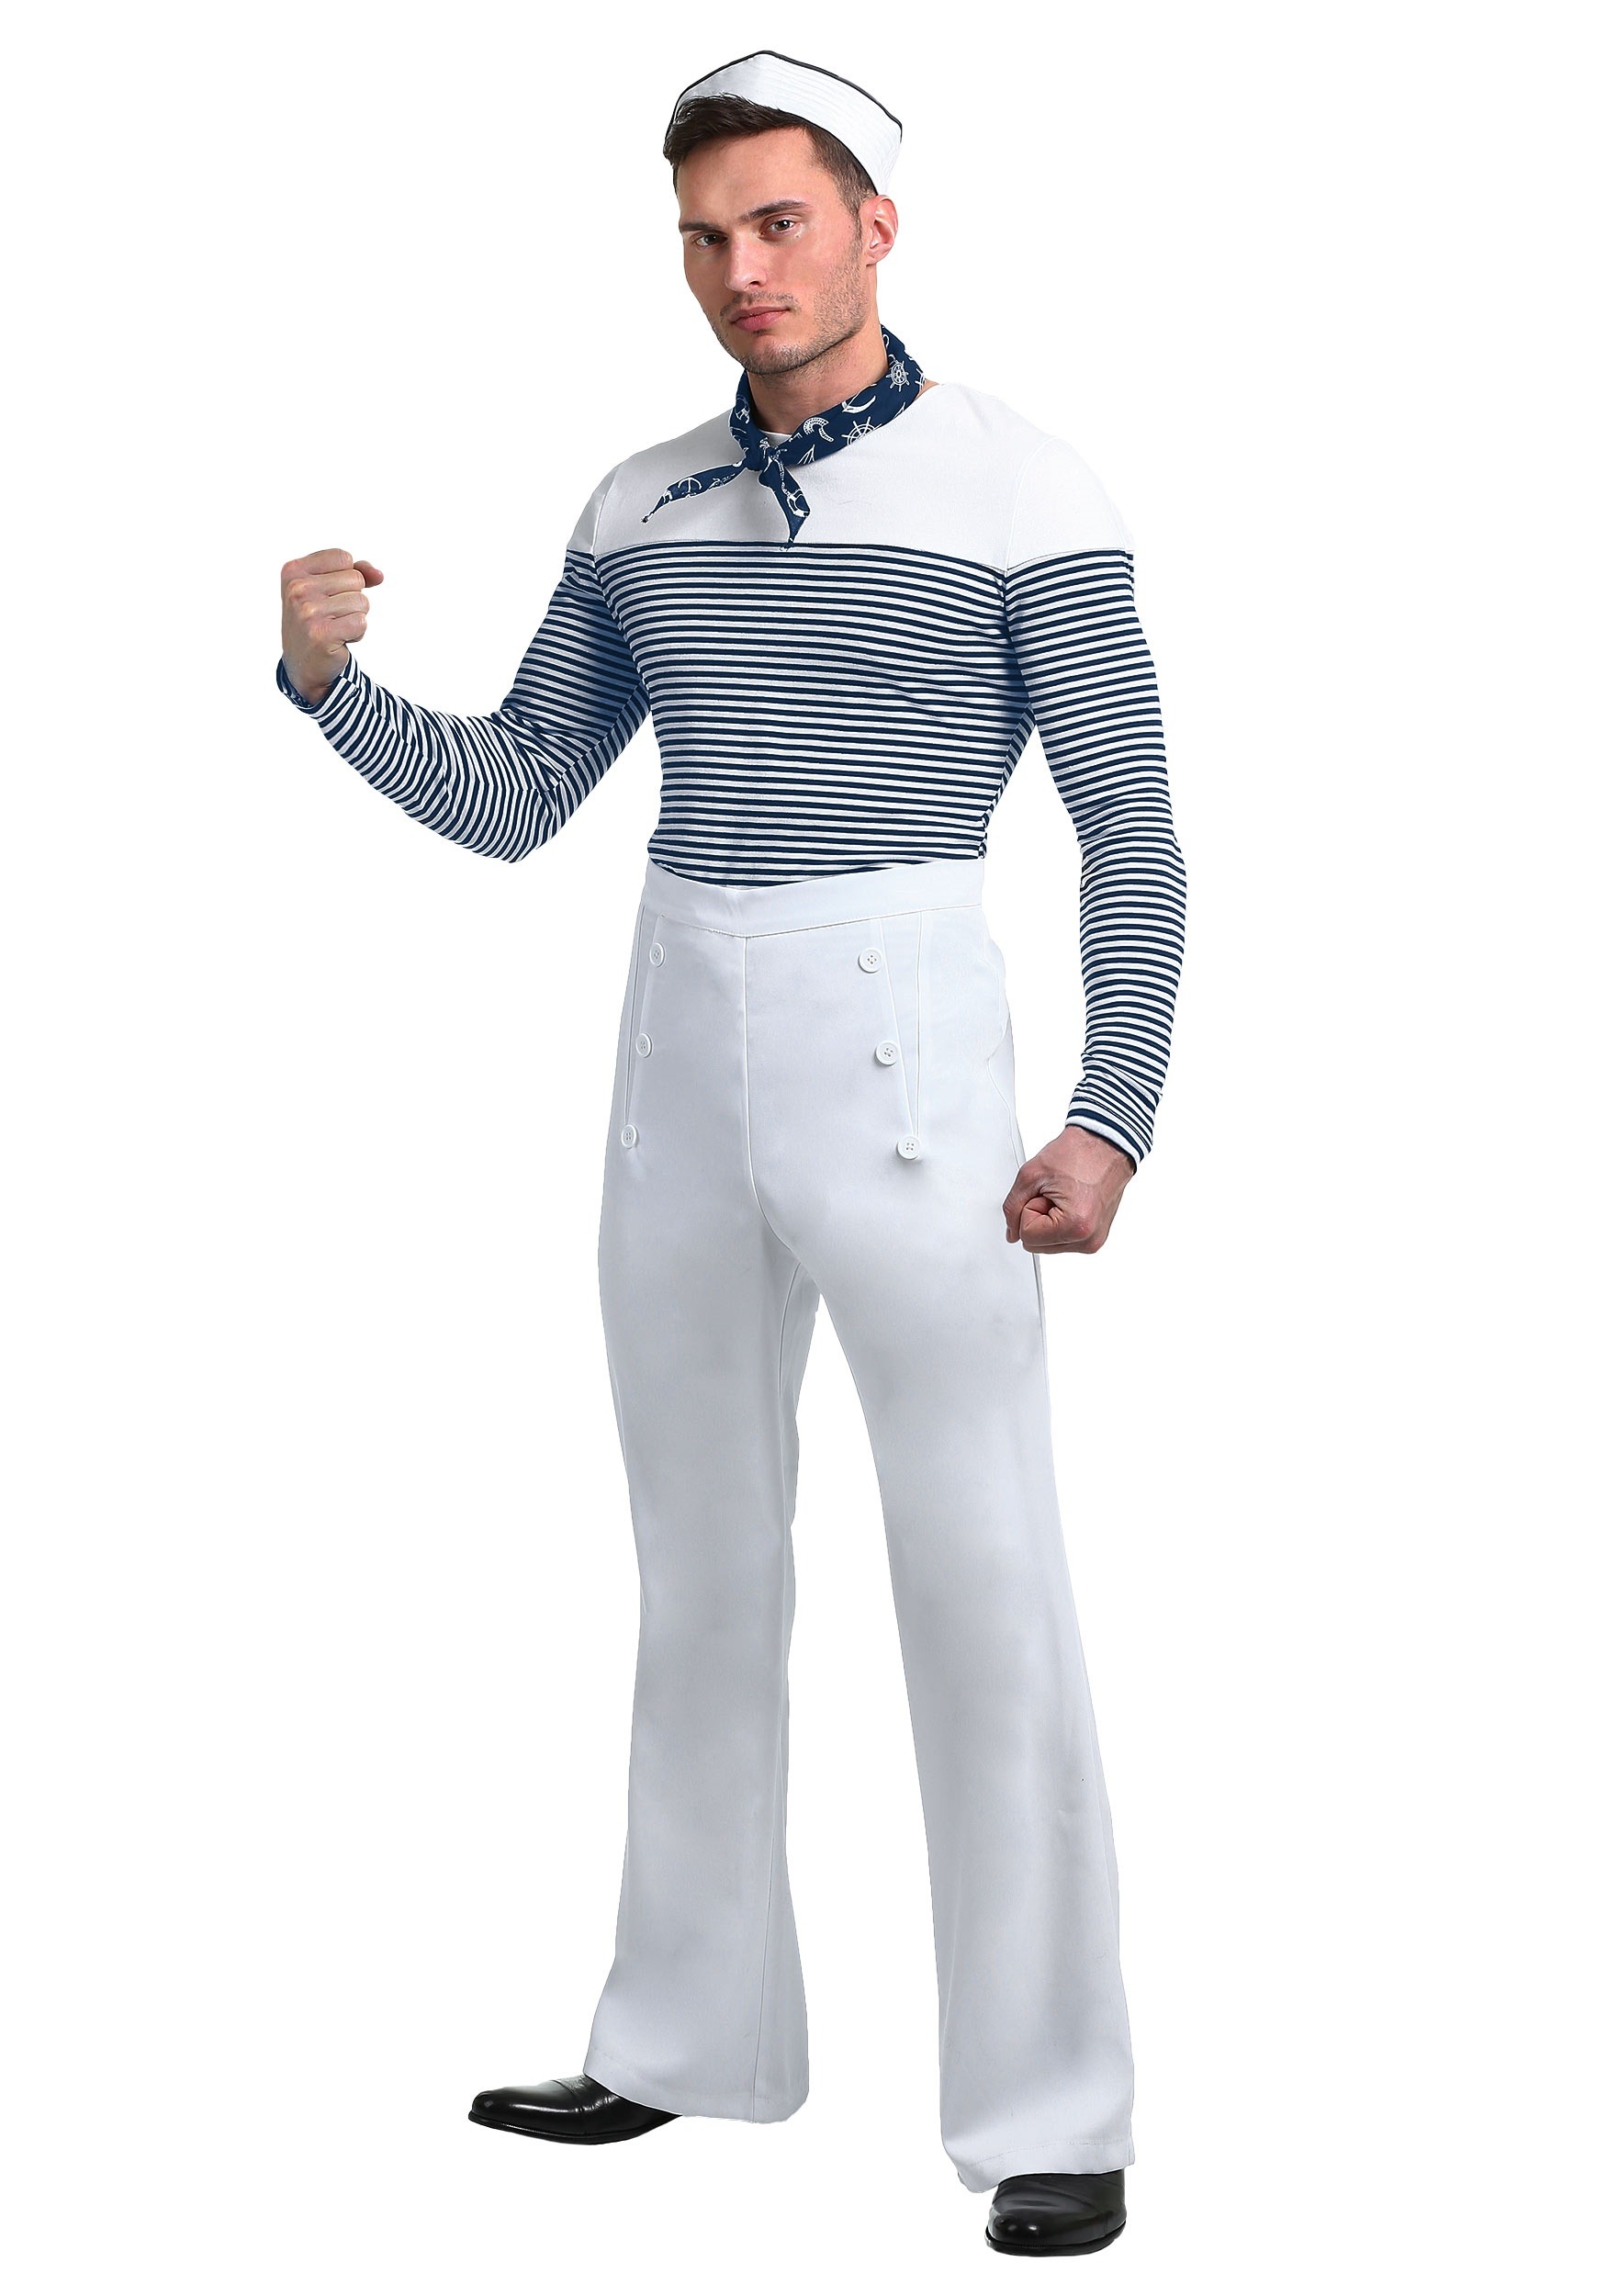 Vintage Sailor Plus Size Costume  for Men 